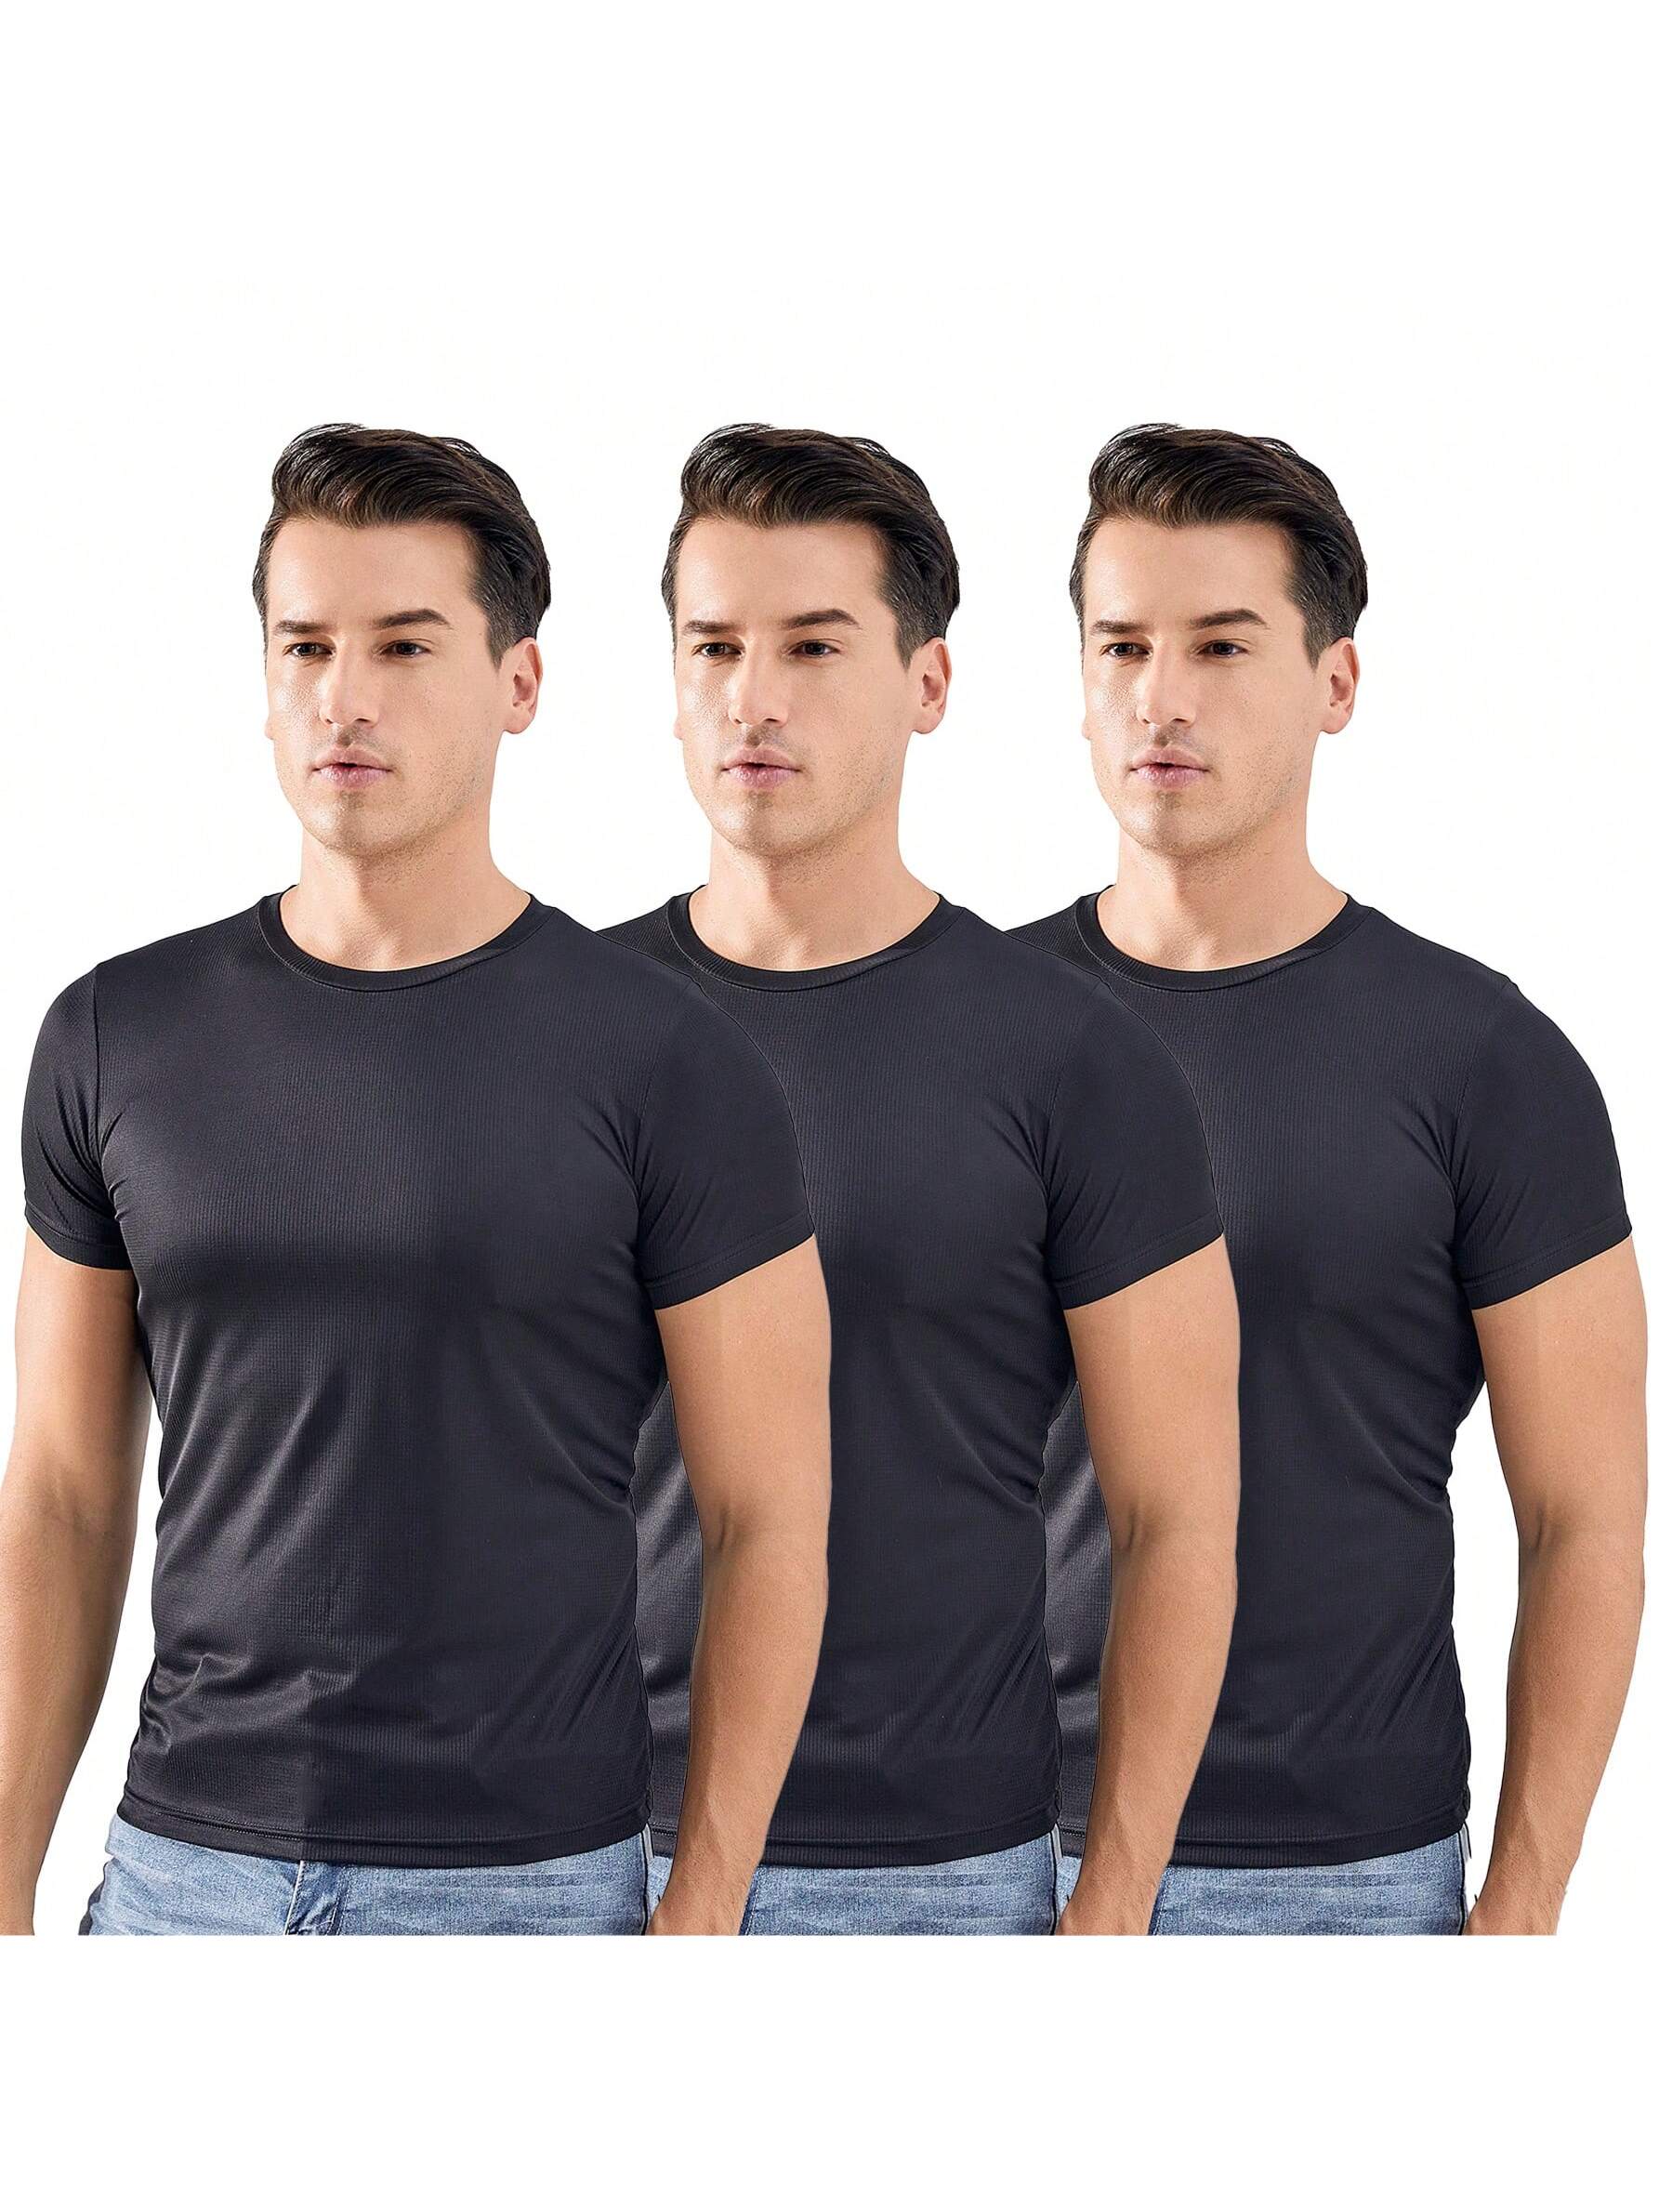 2 шт. комплект свободных футболок с короткими рукавами для тренировок и бега для мужчин, черный